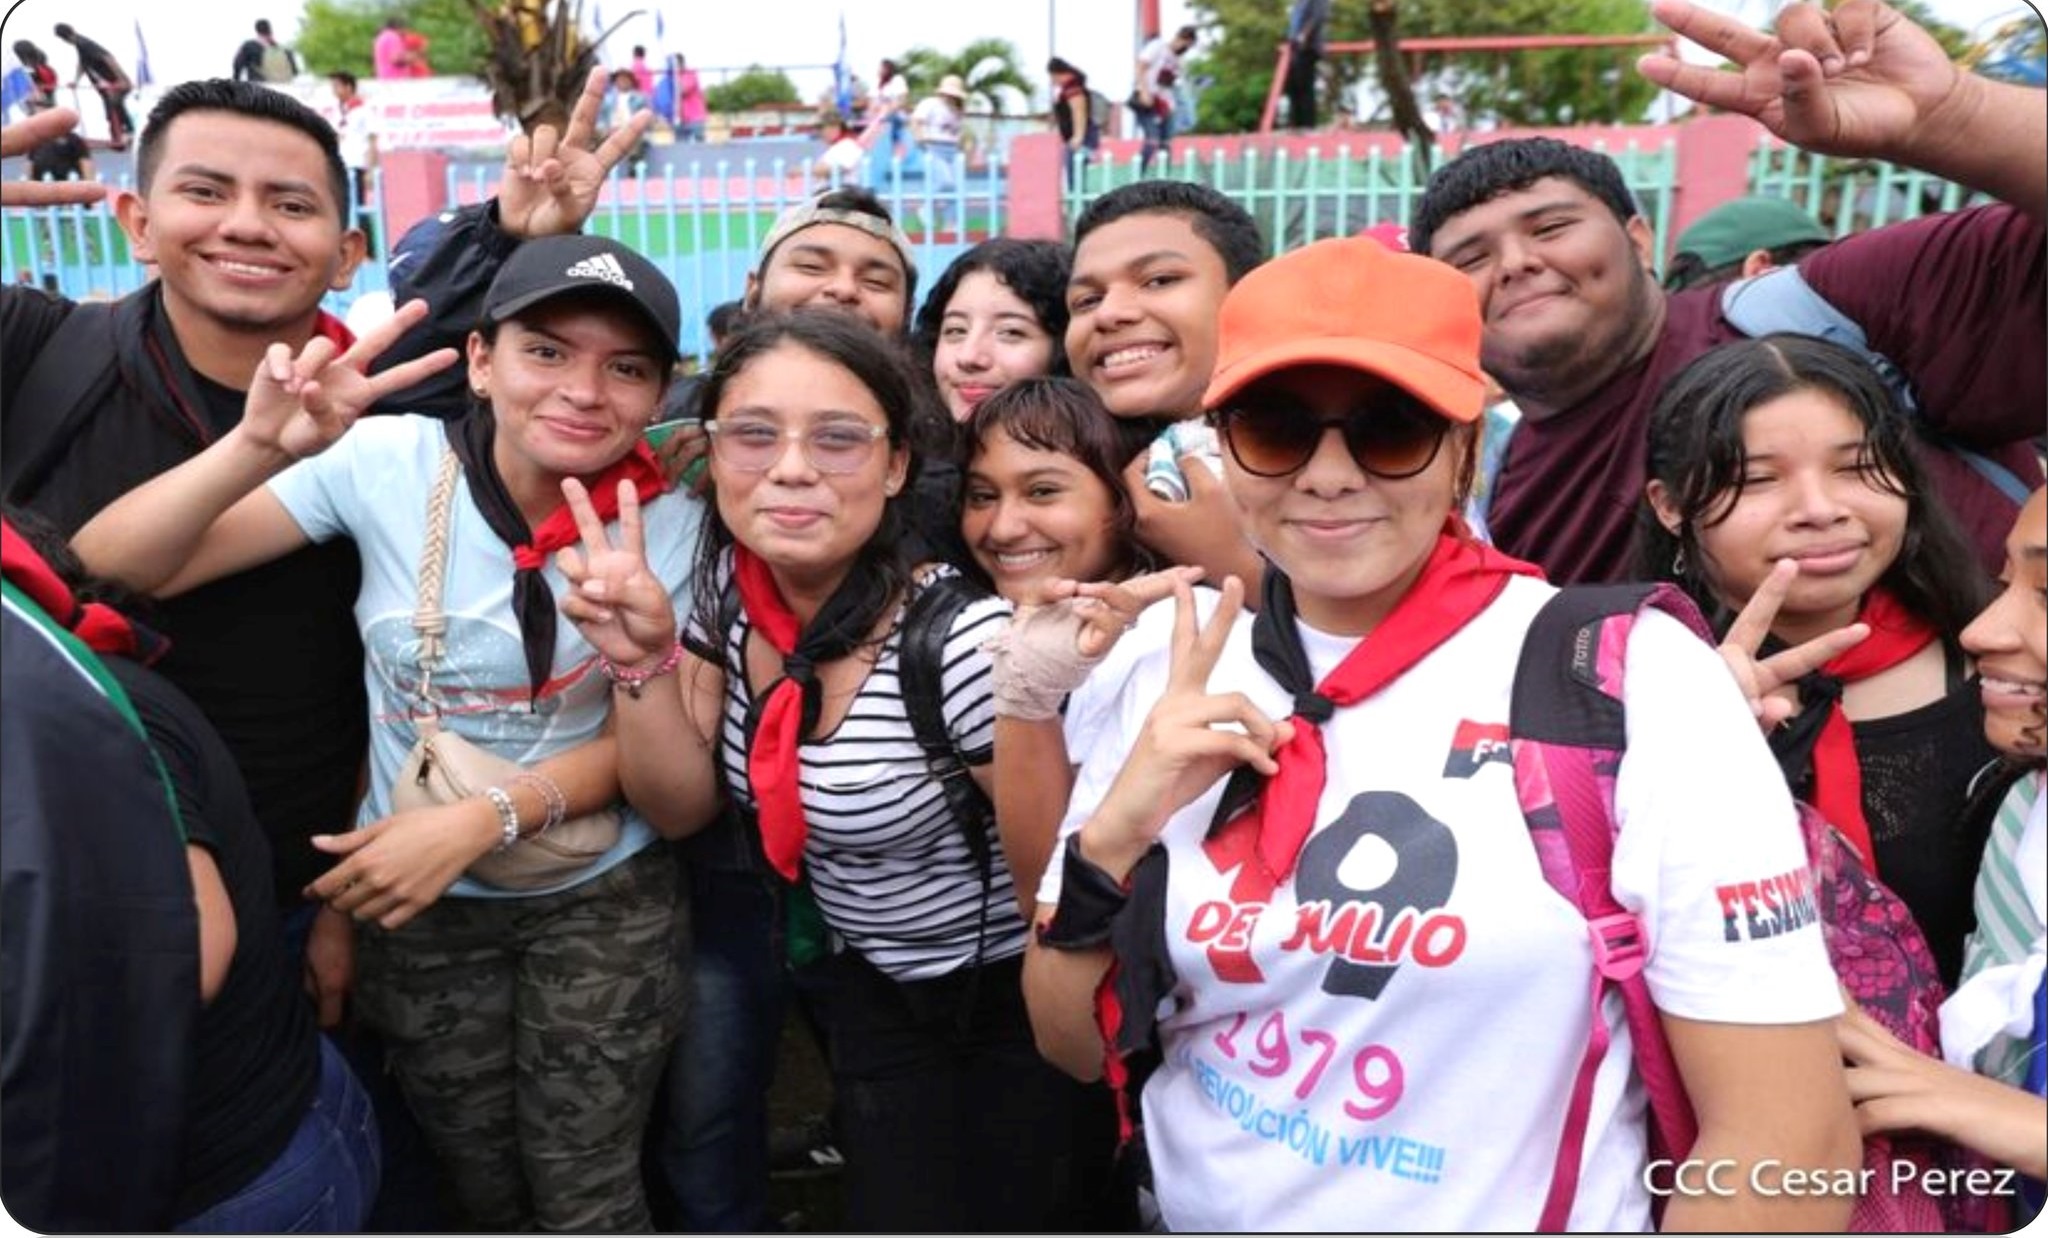 La importancia de la juventud en el proceso revolucionario Managua. Por Tomás Valdez Rodríguez, Radio La Primerísima